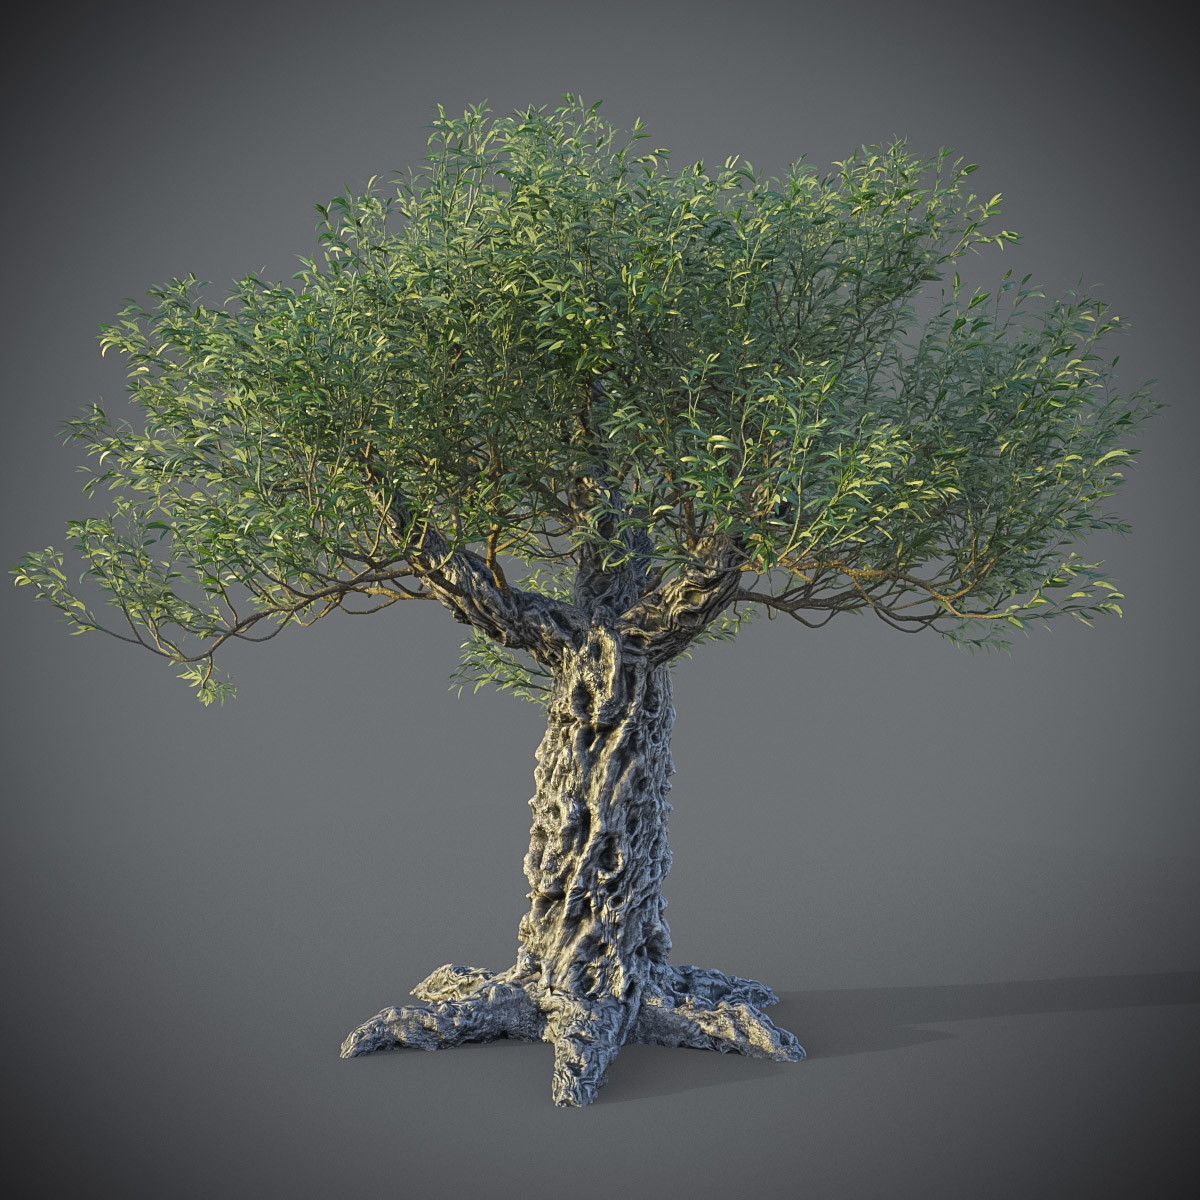 ArtStation - Animated 3dmodel of Olea europaea tree